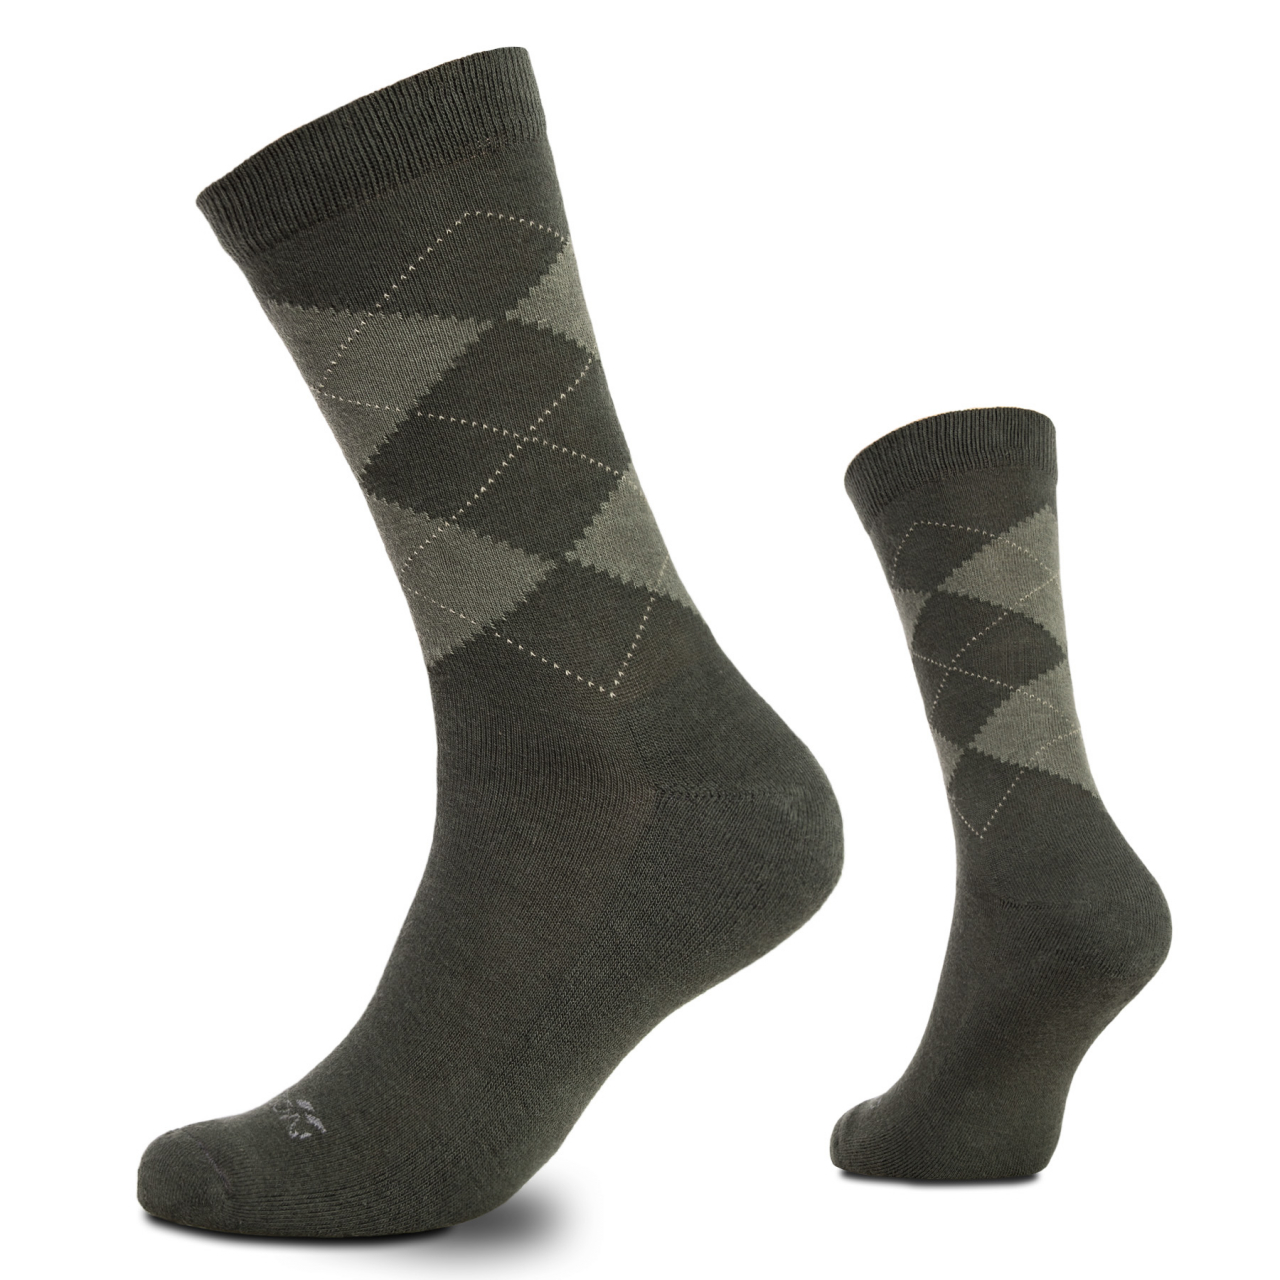 Ponožky Pentagon Phineas - olivové, 39-41